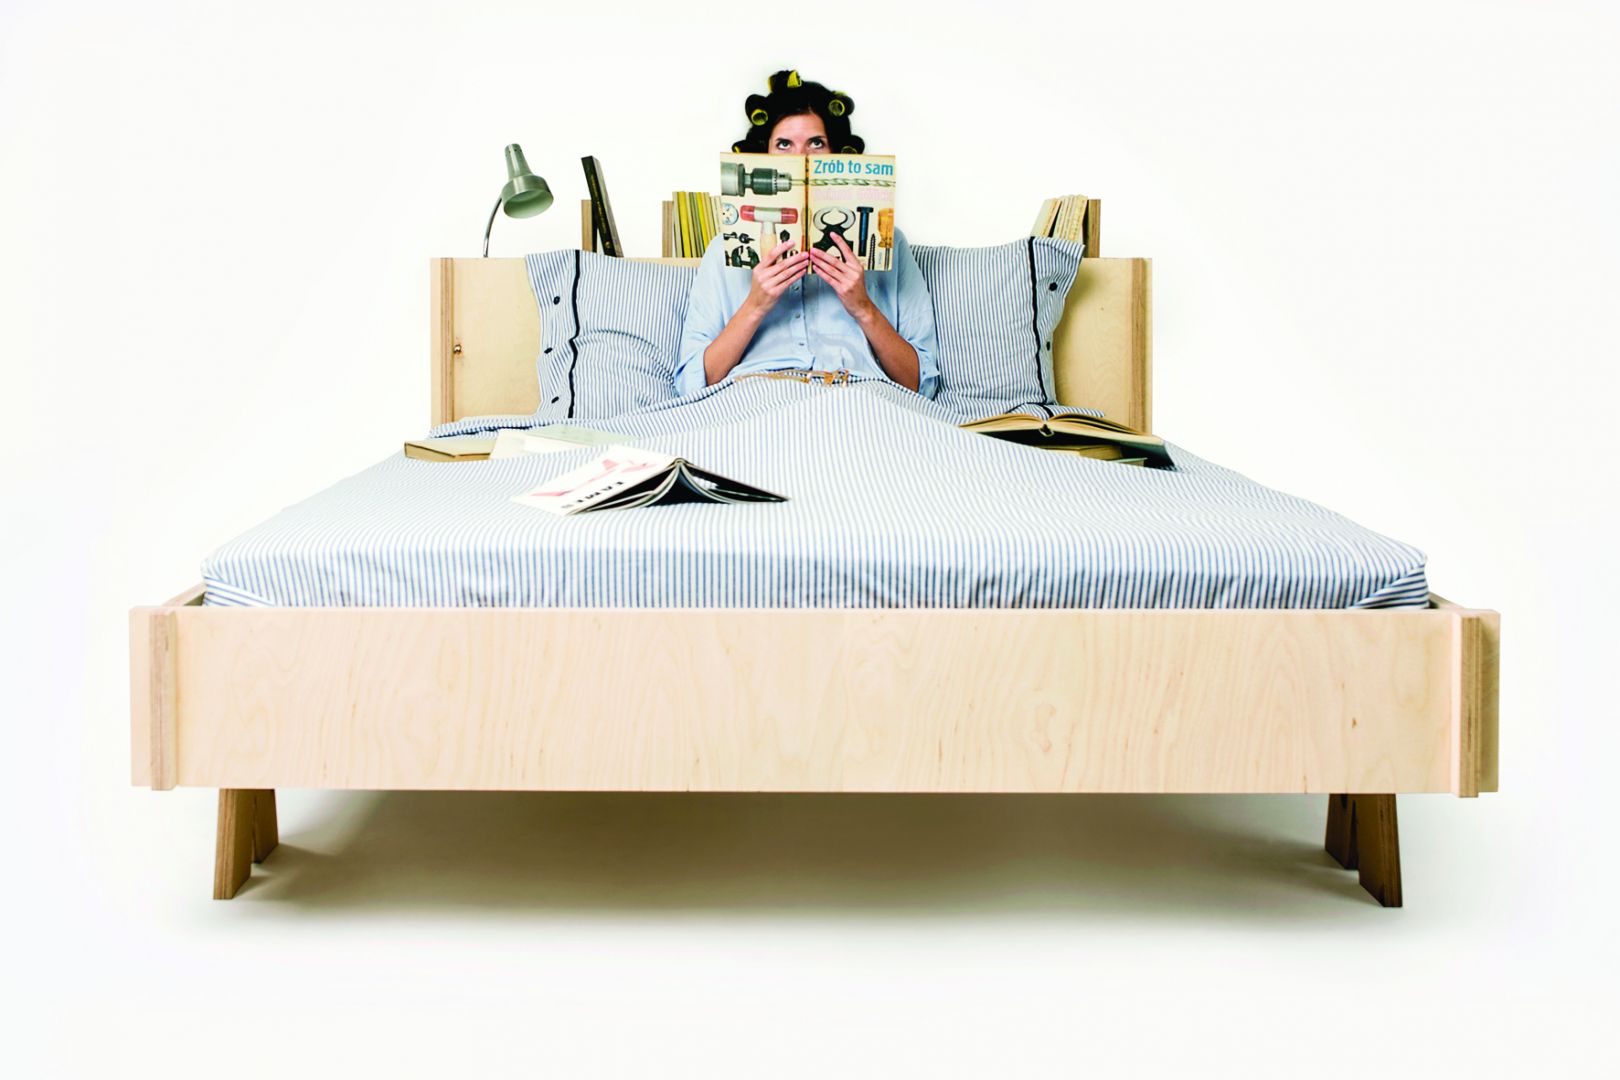 Łóżko Prymus wykonane jest z ekologicznej sklejki. W wezgłowiu przewidziano półki na książki, dla lubiących czytać przed snem. Fot. Śnimisie